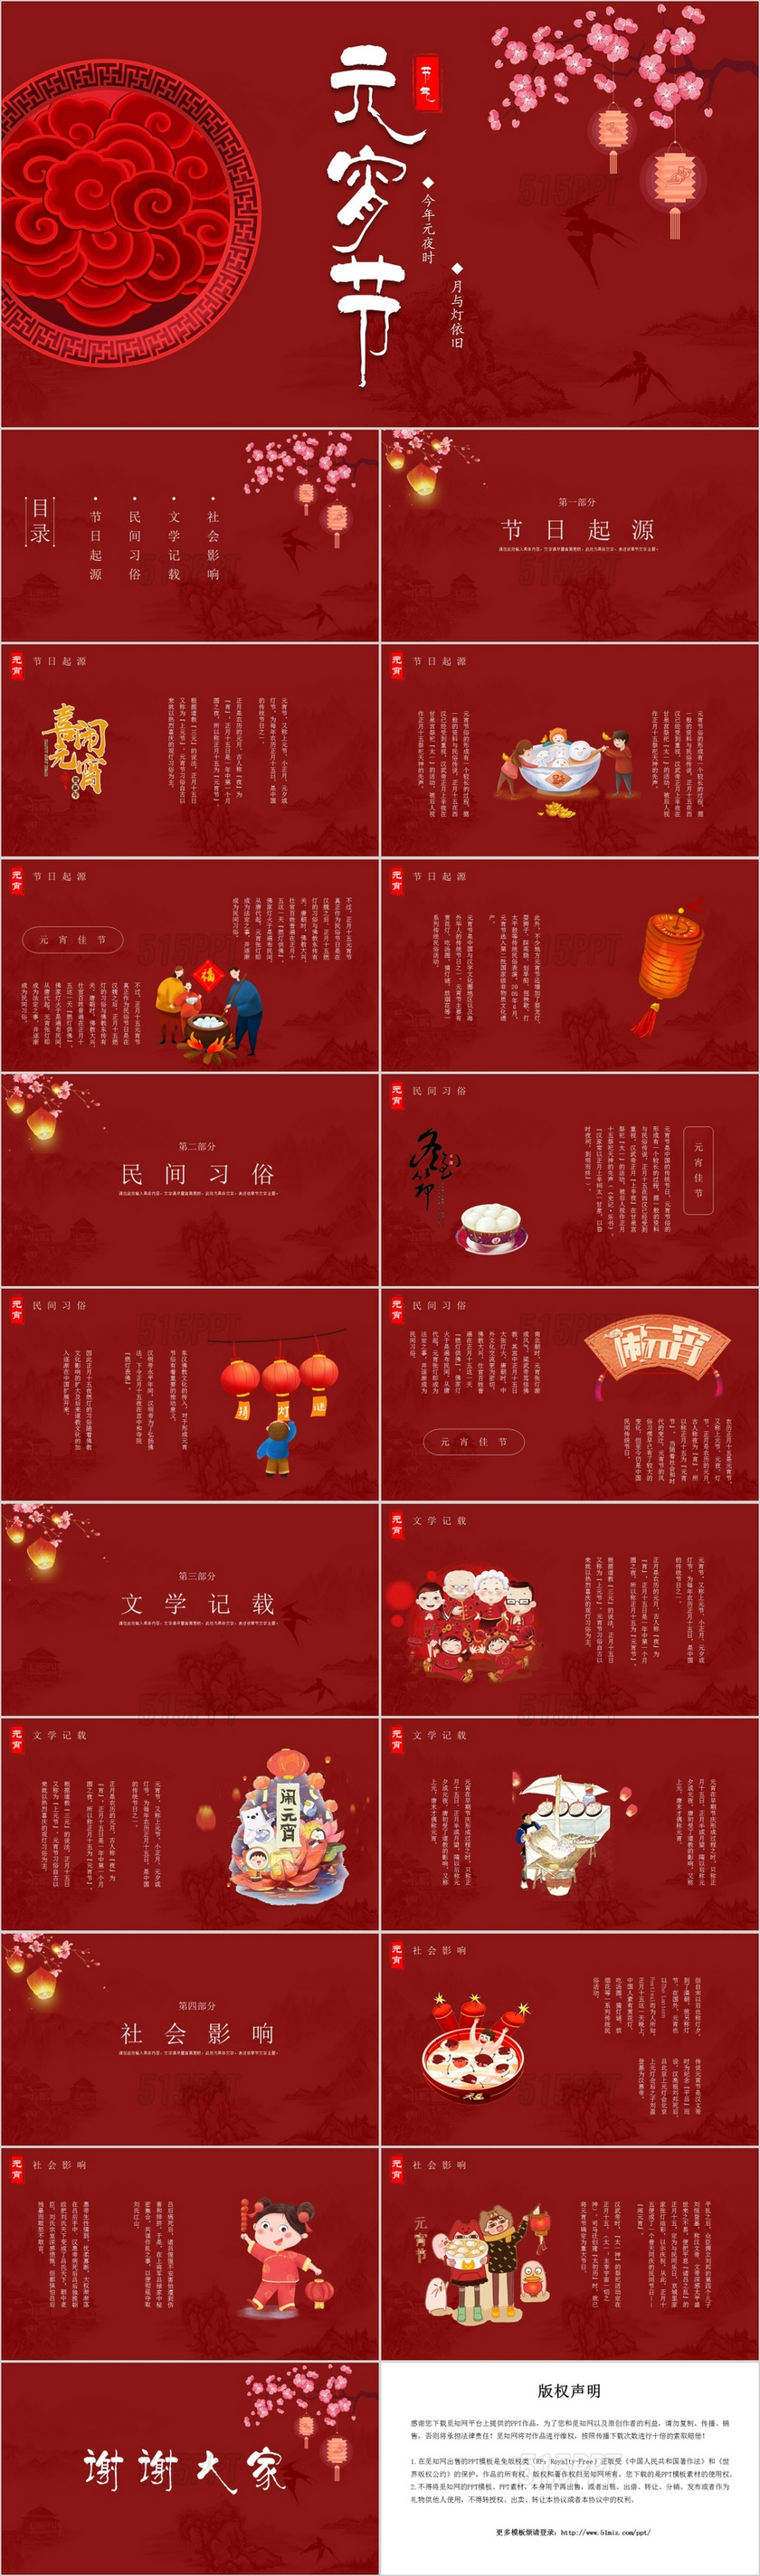 红色中国风传统节日元宵节节日介绍PPT模板2020元宵节